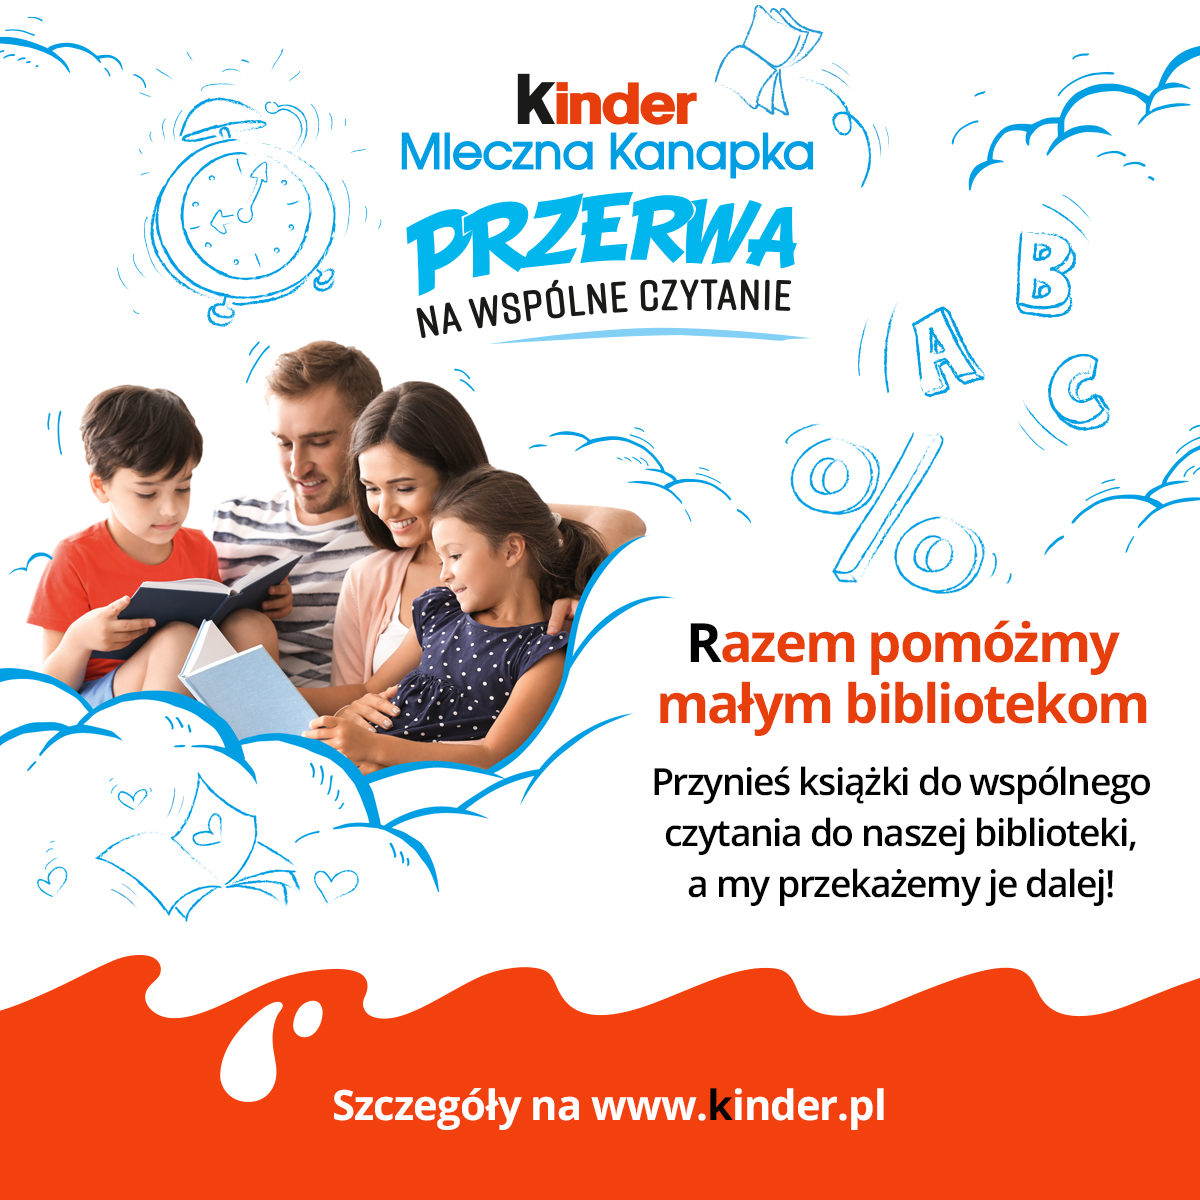 Na plakacie tekst: Kinder Mleczna Kanapka. Przerwa na wspólne czytanie. Razem pomóżmy małym bibliotekom. Przynieś książki do wspólnego czytania do naszej biblioteki, a my przekażemy je dalej! Szczegóły na www.kinder.pl 